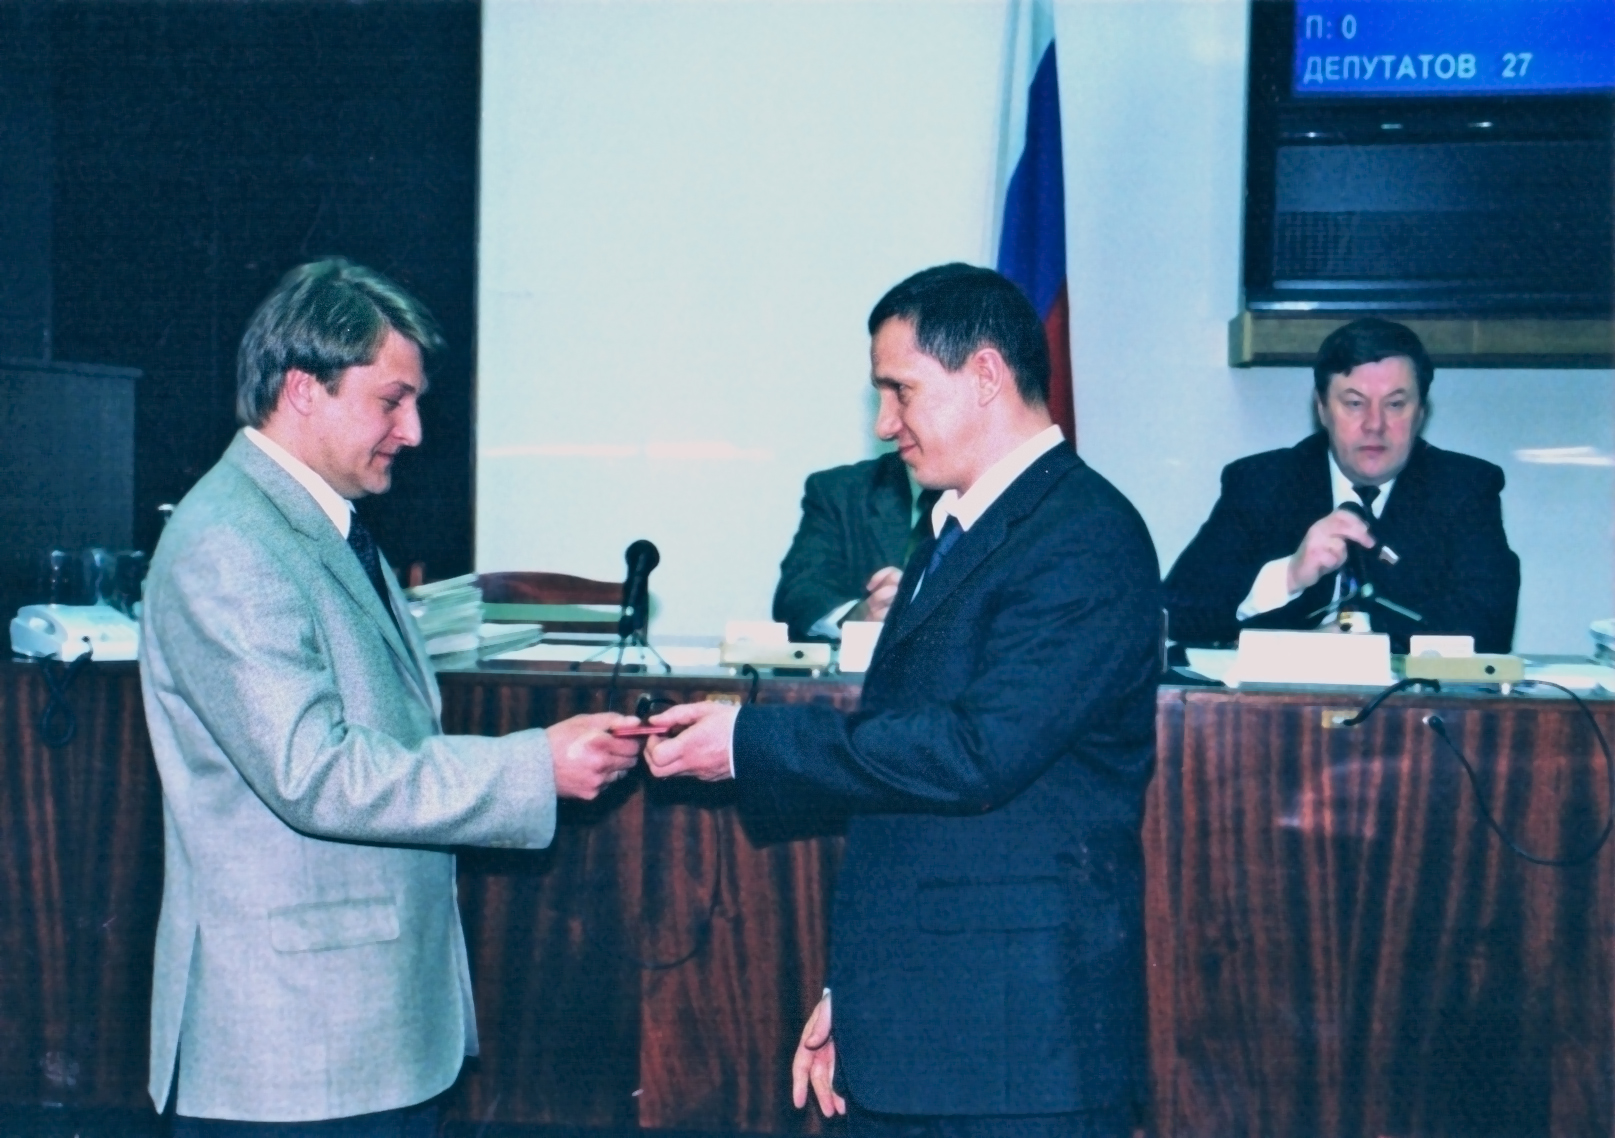 Губернатор Пермской области Юрий Трутнев вручает удостоверение Председателя комиссии по помилованию первому Уполномоченному по правам человека в Пермской области Сергею Матвееву (2001 −2004)